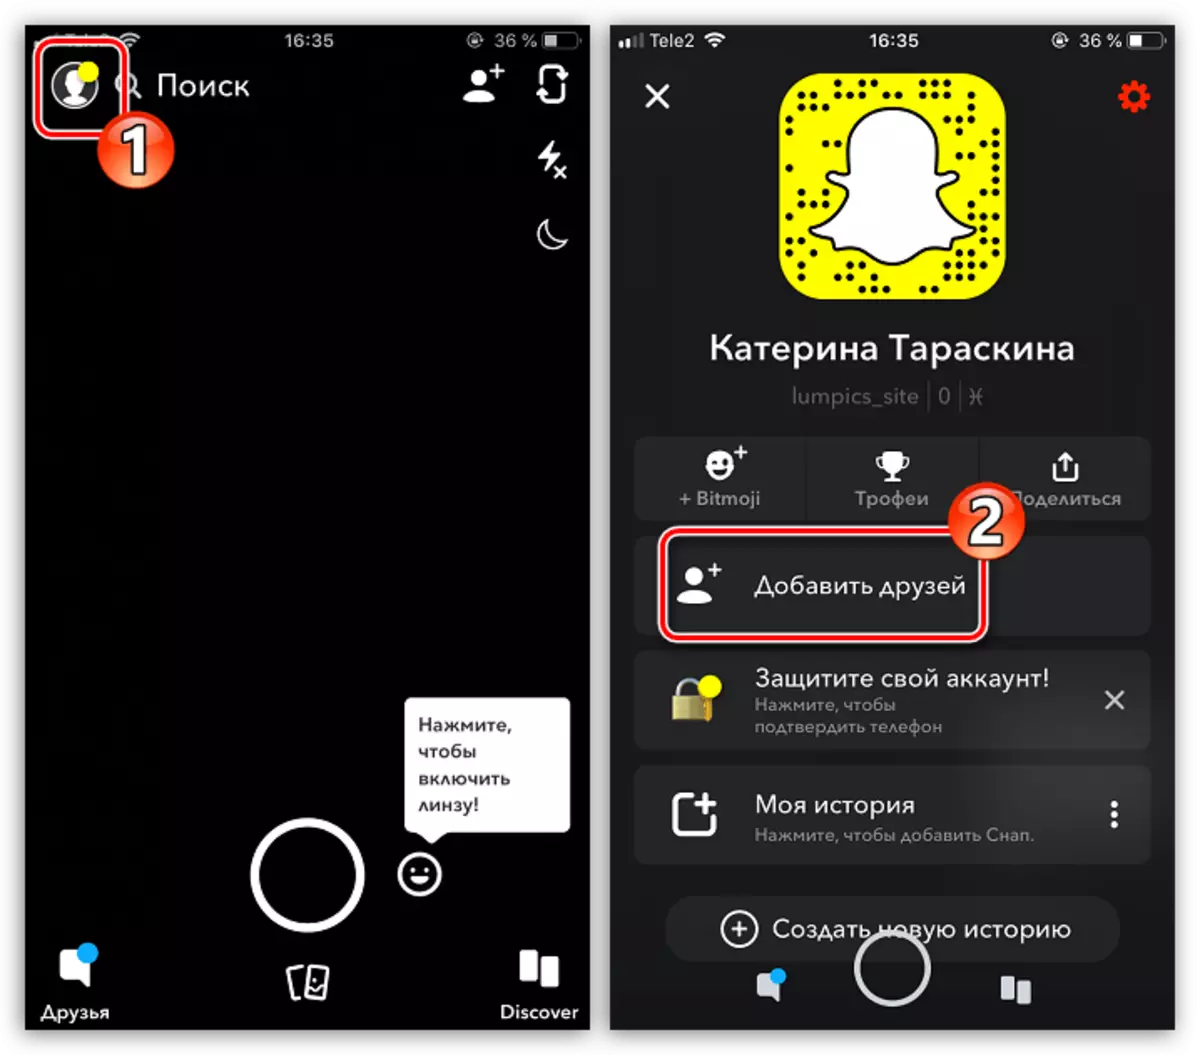 Maghanap ng mga kaibigan sa snapchat application sa iPhone